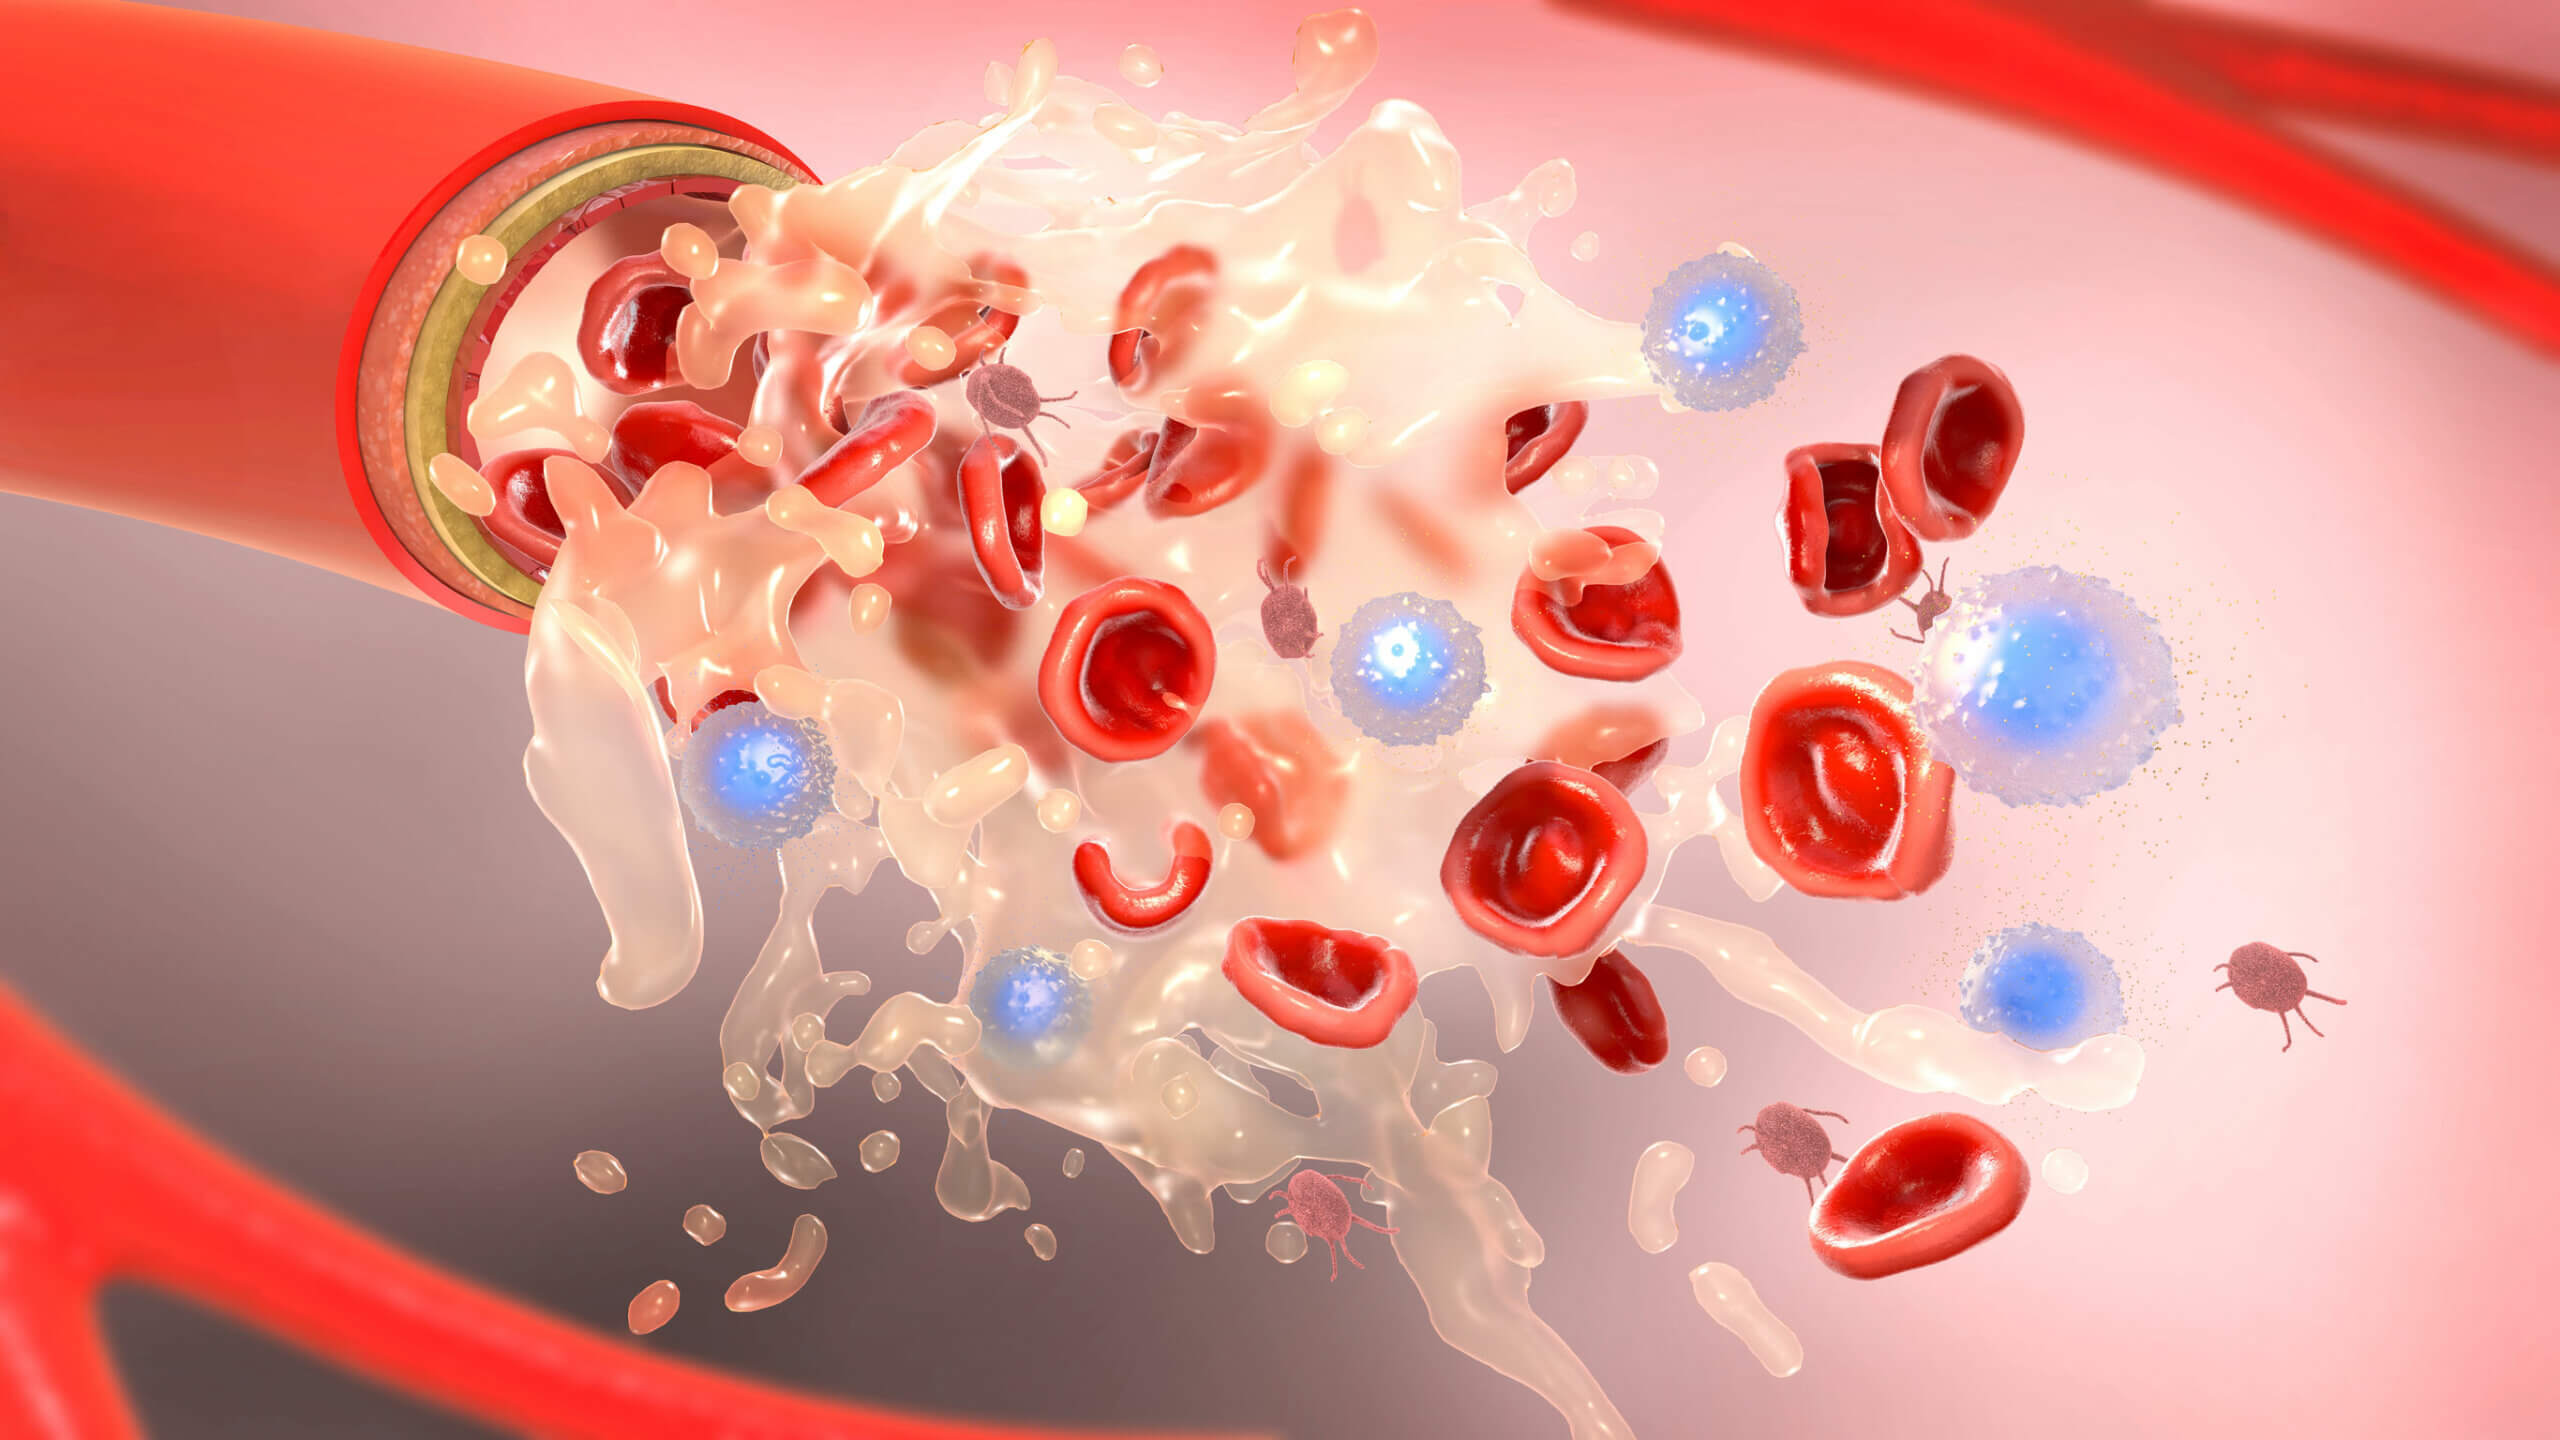 La conta delle piastrine è una componente essenziale dell'analisi del sangue.